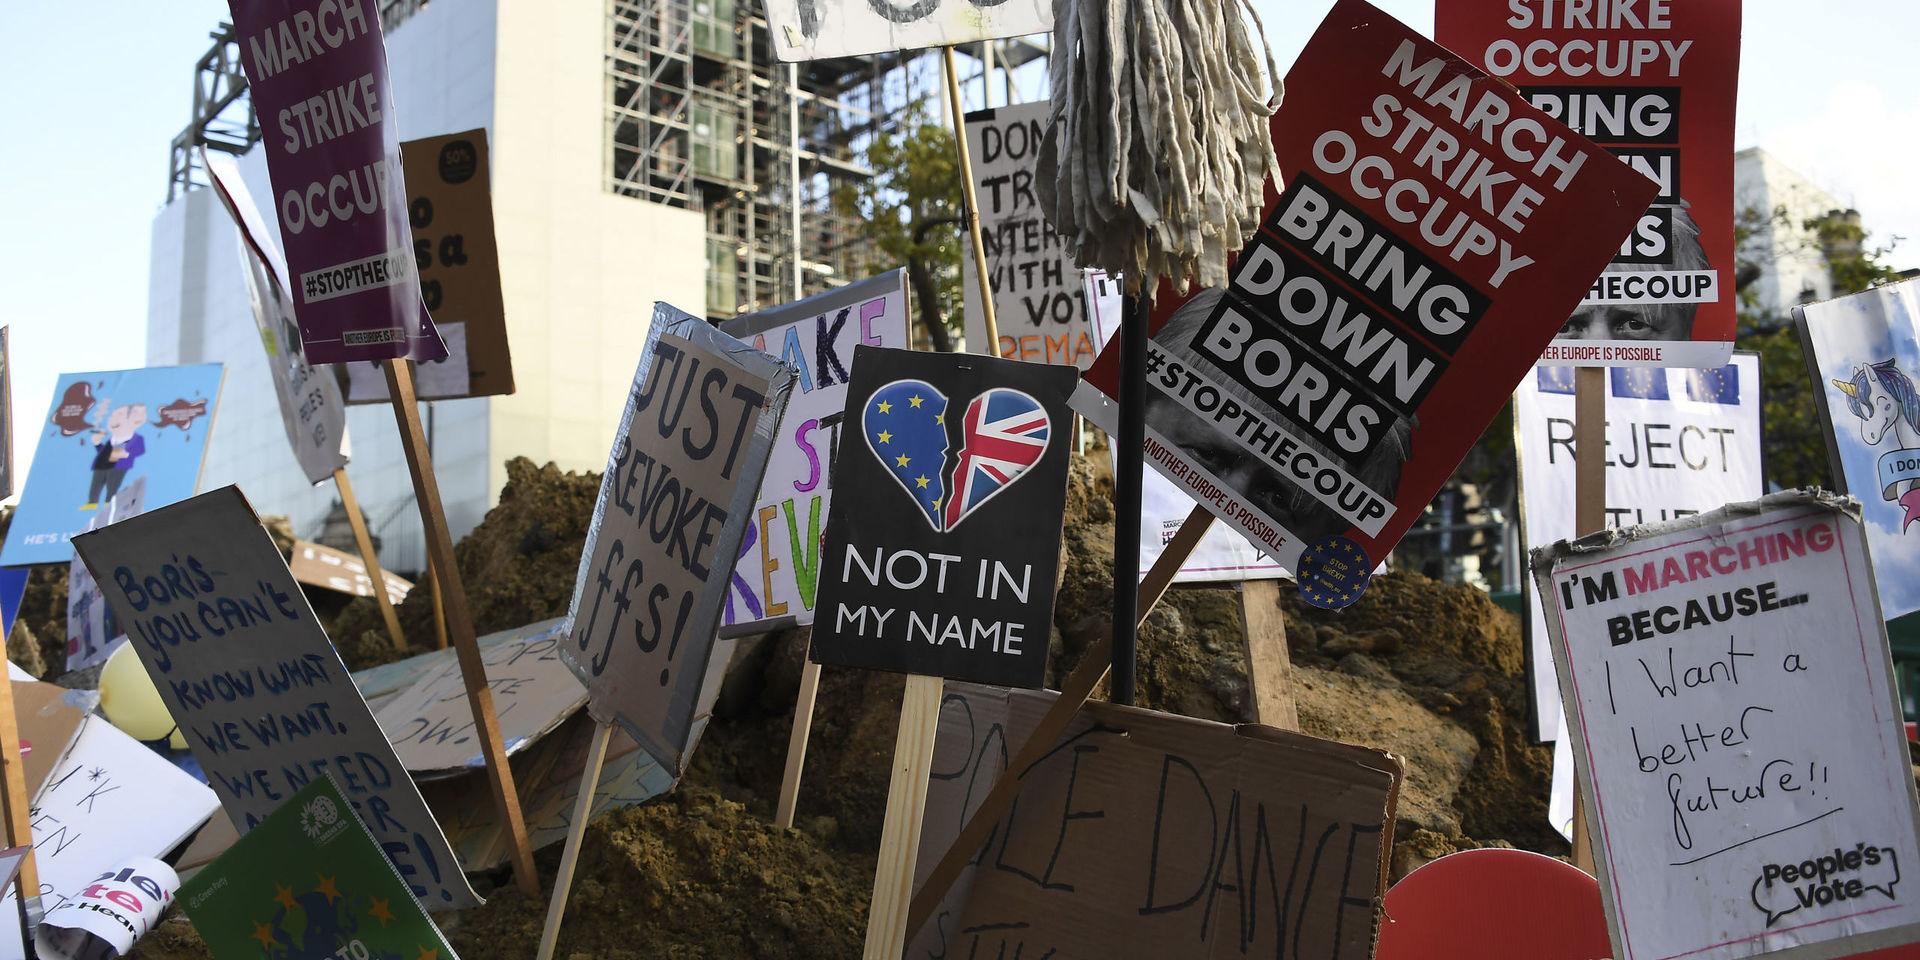 Skyltar med antibrexitbudskap nedstuckna i en hög av jord efter lördagens demonstration i London med krav på en ny folkomröstning. 